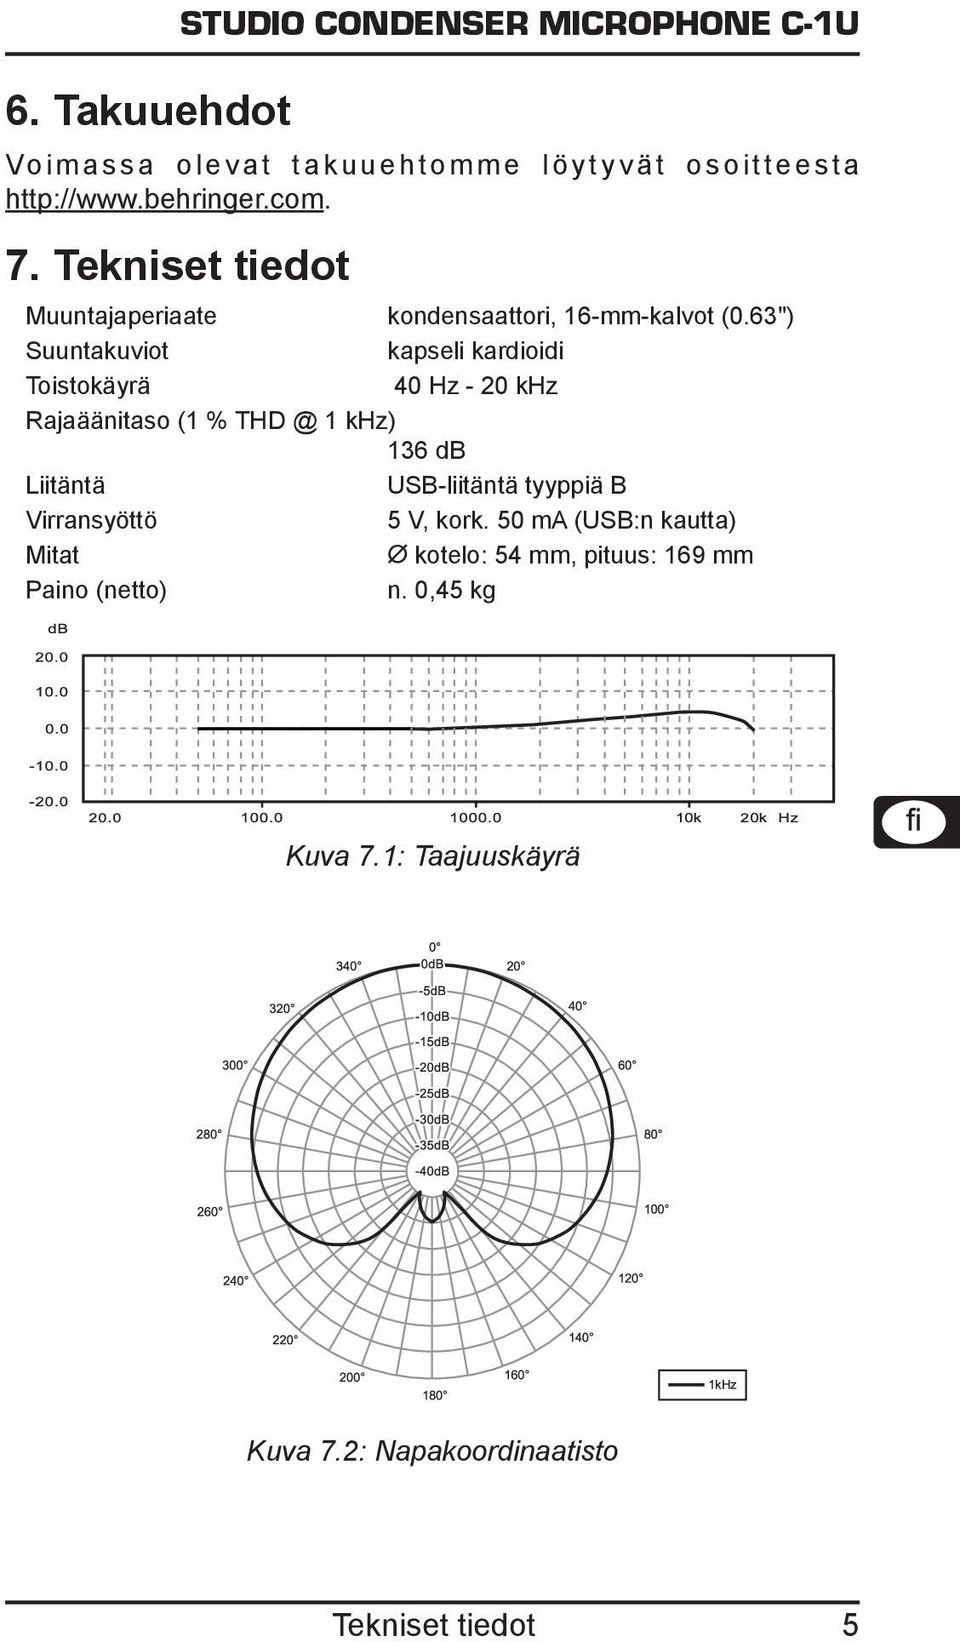 63") Suuntakuviot kapseli kardioidi Toistokäyrä 40 Hz - 20 khz Rajaäänitaso (1 % THD @ 1 khz) 136 db Liitäntä USB-liitäntä tyyppiä B